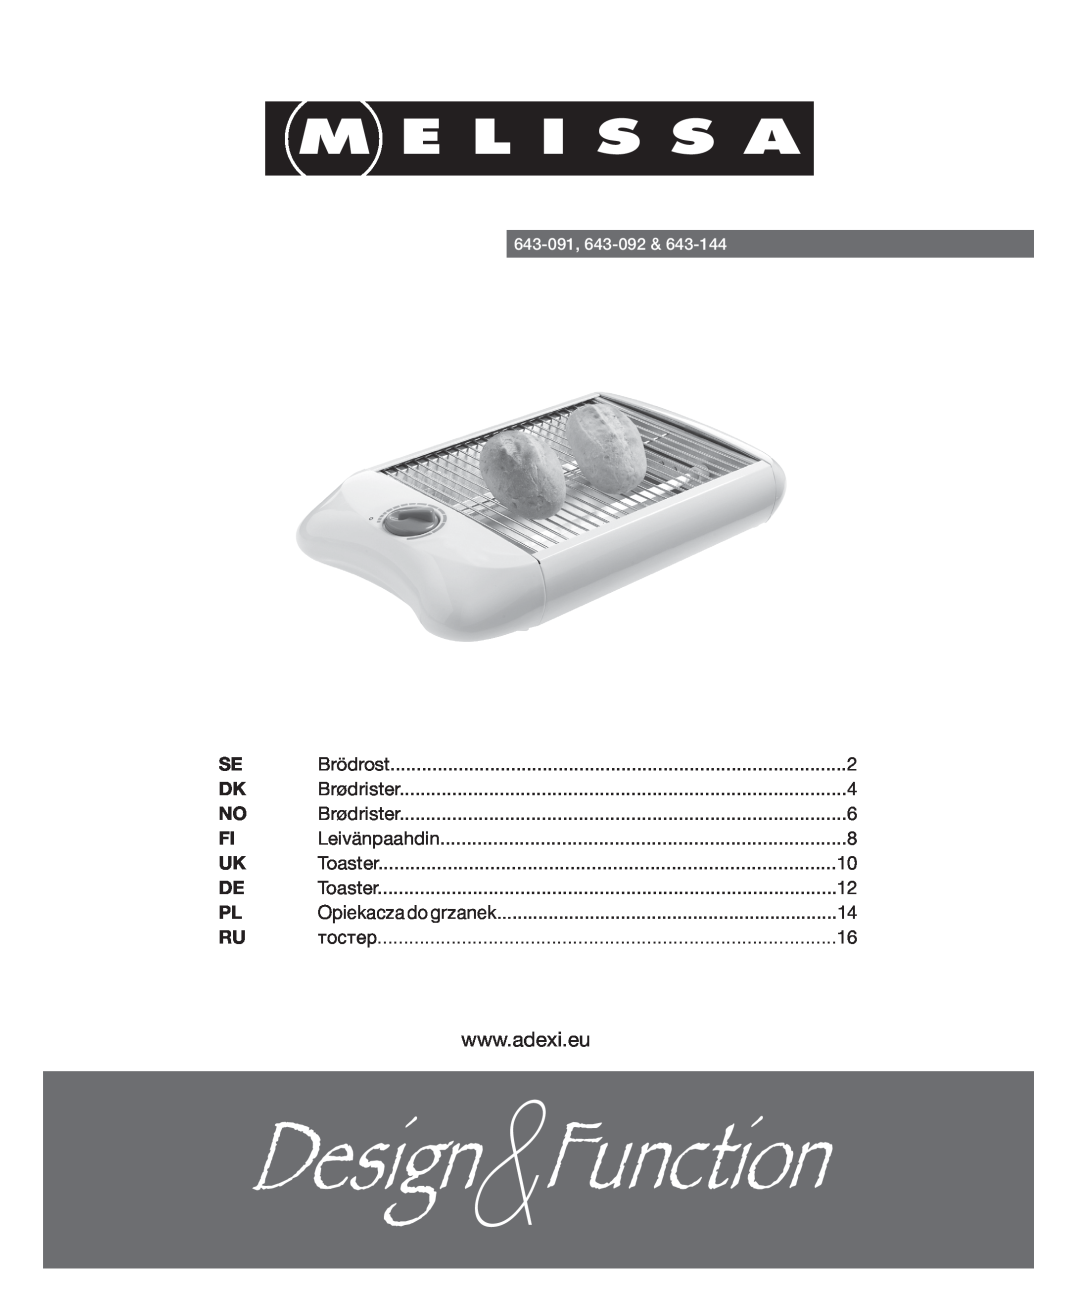 Melissa 643-144, 643-091, 643-092 manual 